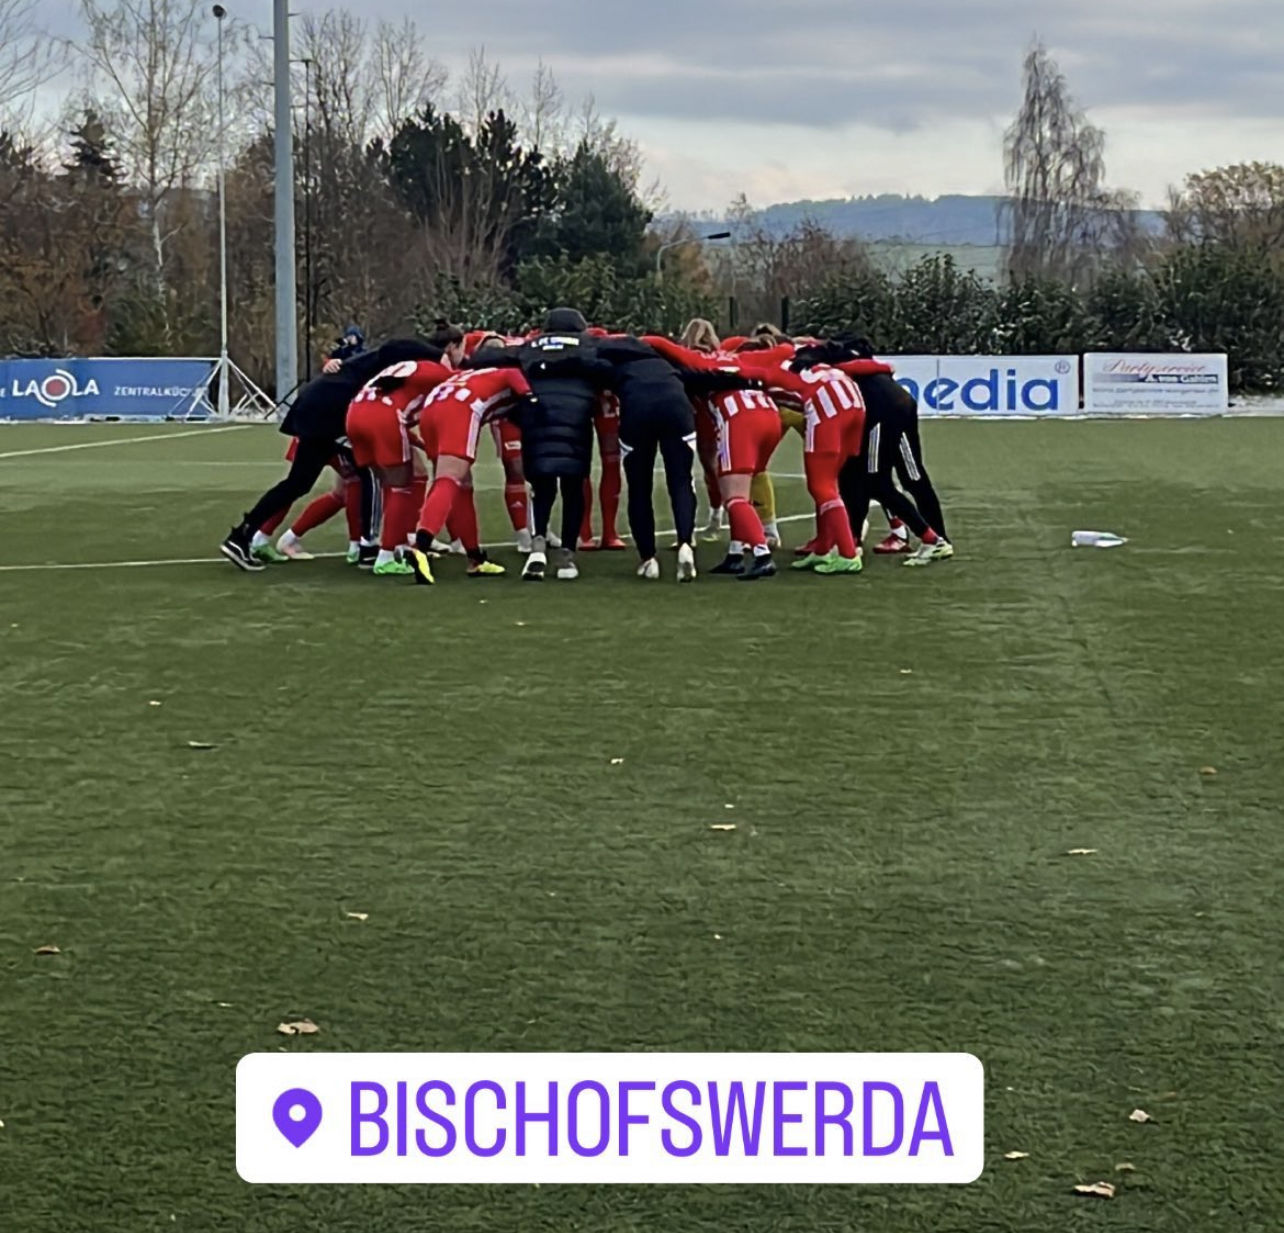 Die Union-Spielerinnen schwören sich auf das Spiel gegen Bischofswerda ein, Foto: 1. FC Union Berlin Frauen/Instagram